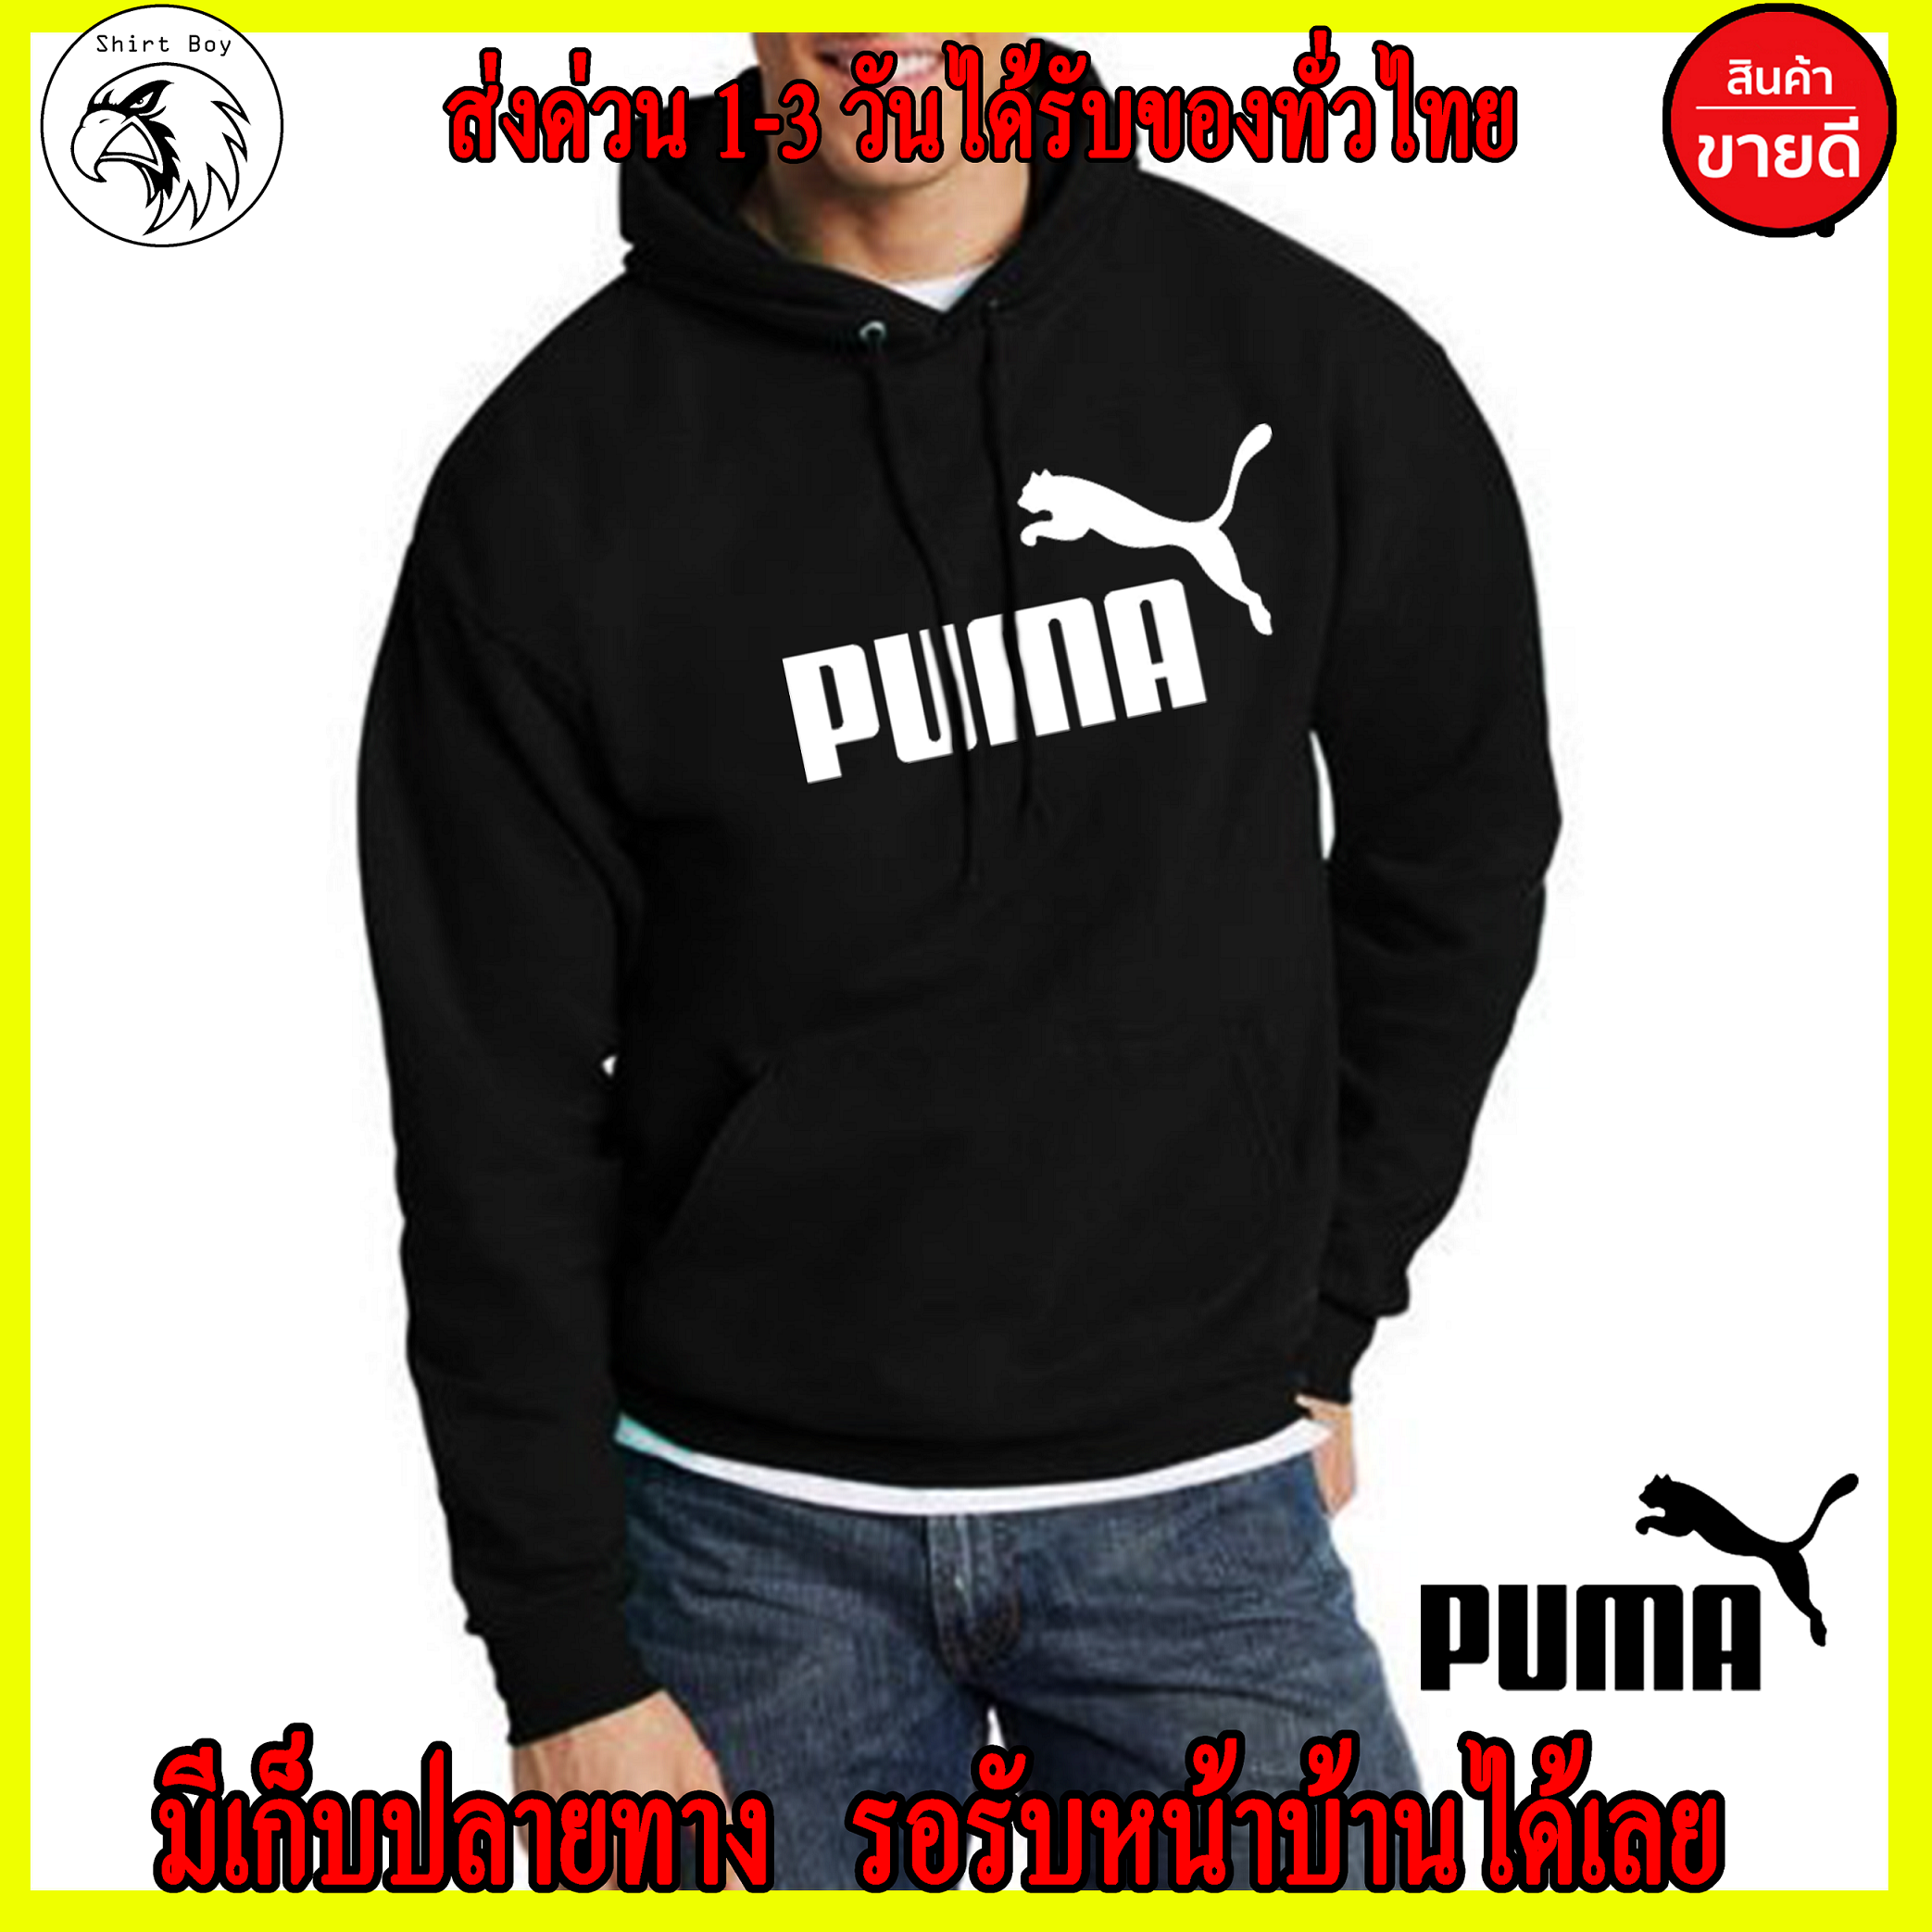 PUMA เสื้อฮู้ด Puma แบบซิปแบบสวม สกรีนแบบเฟล็ก PU สวยสดไม่แตกไม่ลอก ส่งด่วนทั่วไทย ถูกที่สุด